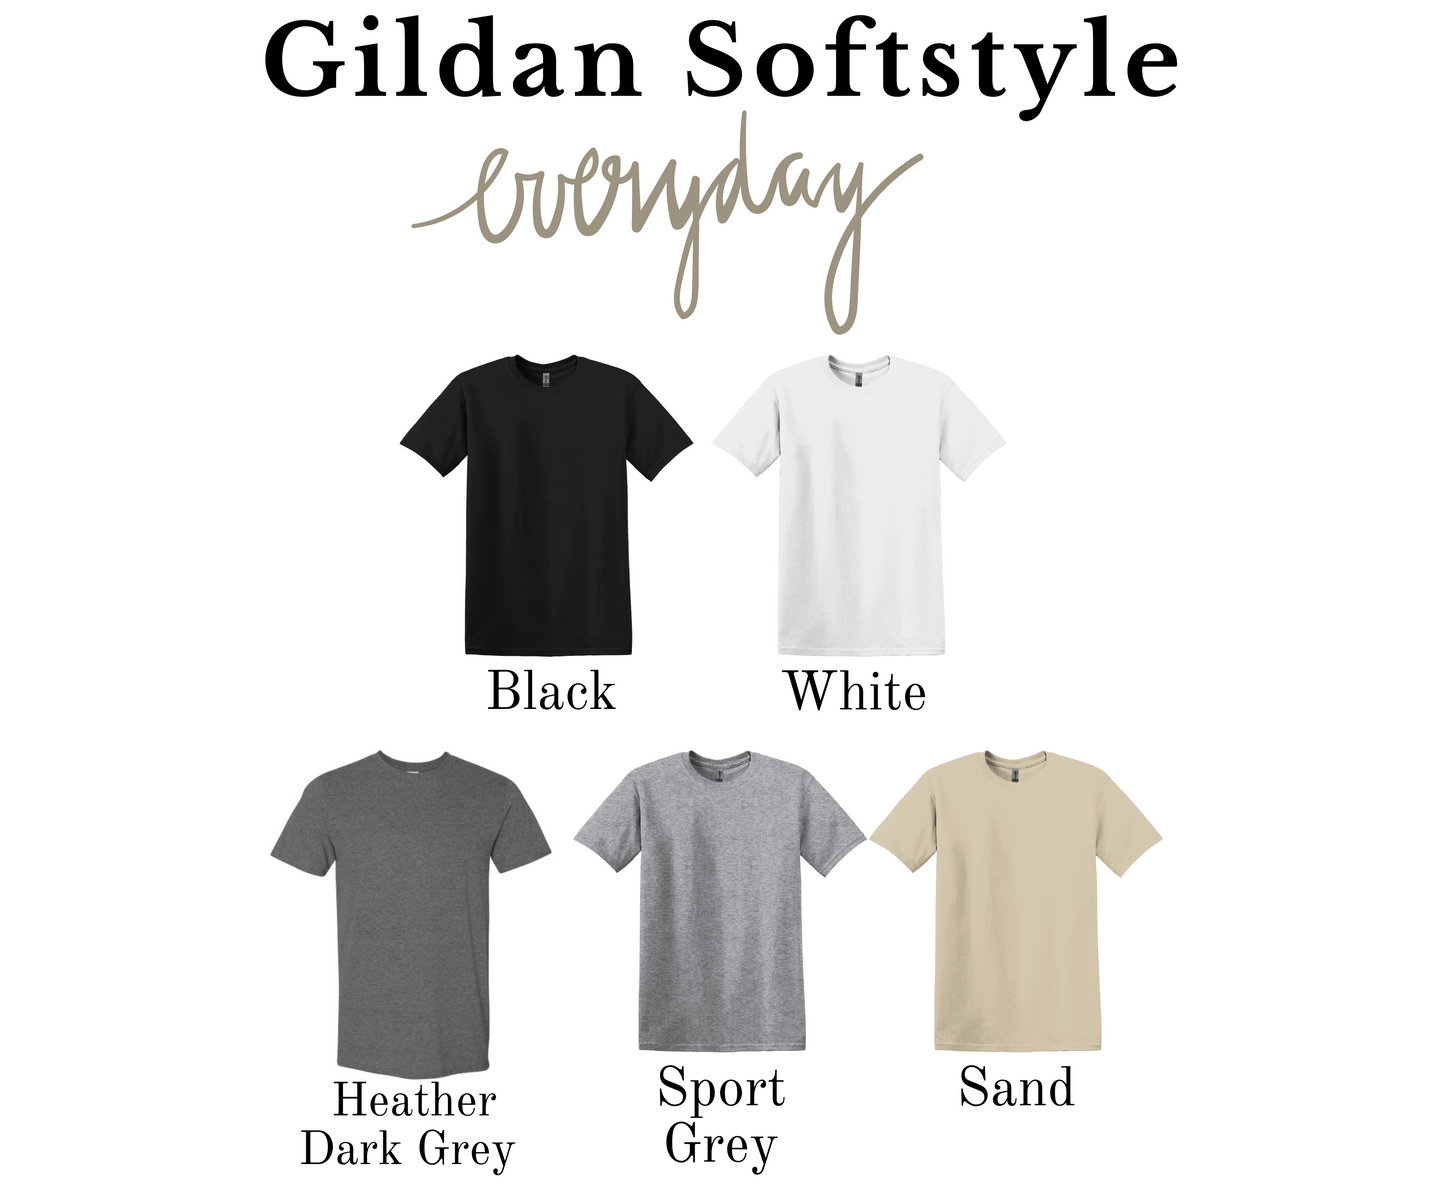 Glitter Effect Christmas Cups Gildan Softstyle T-shirt